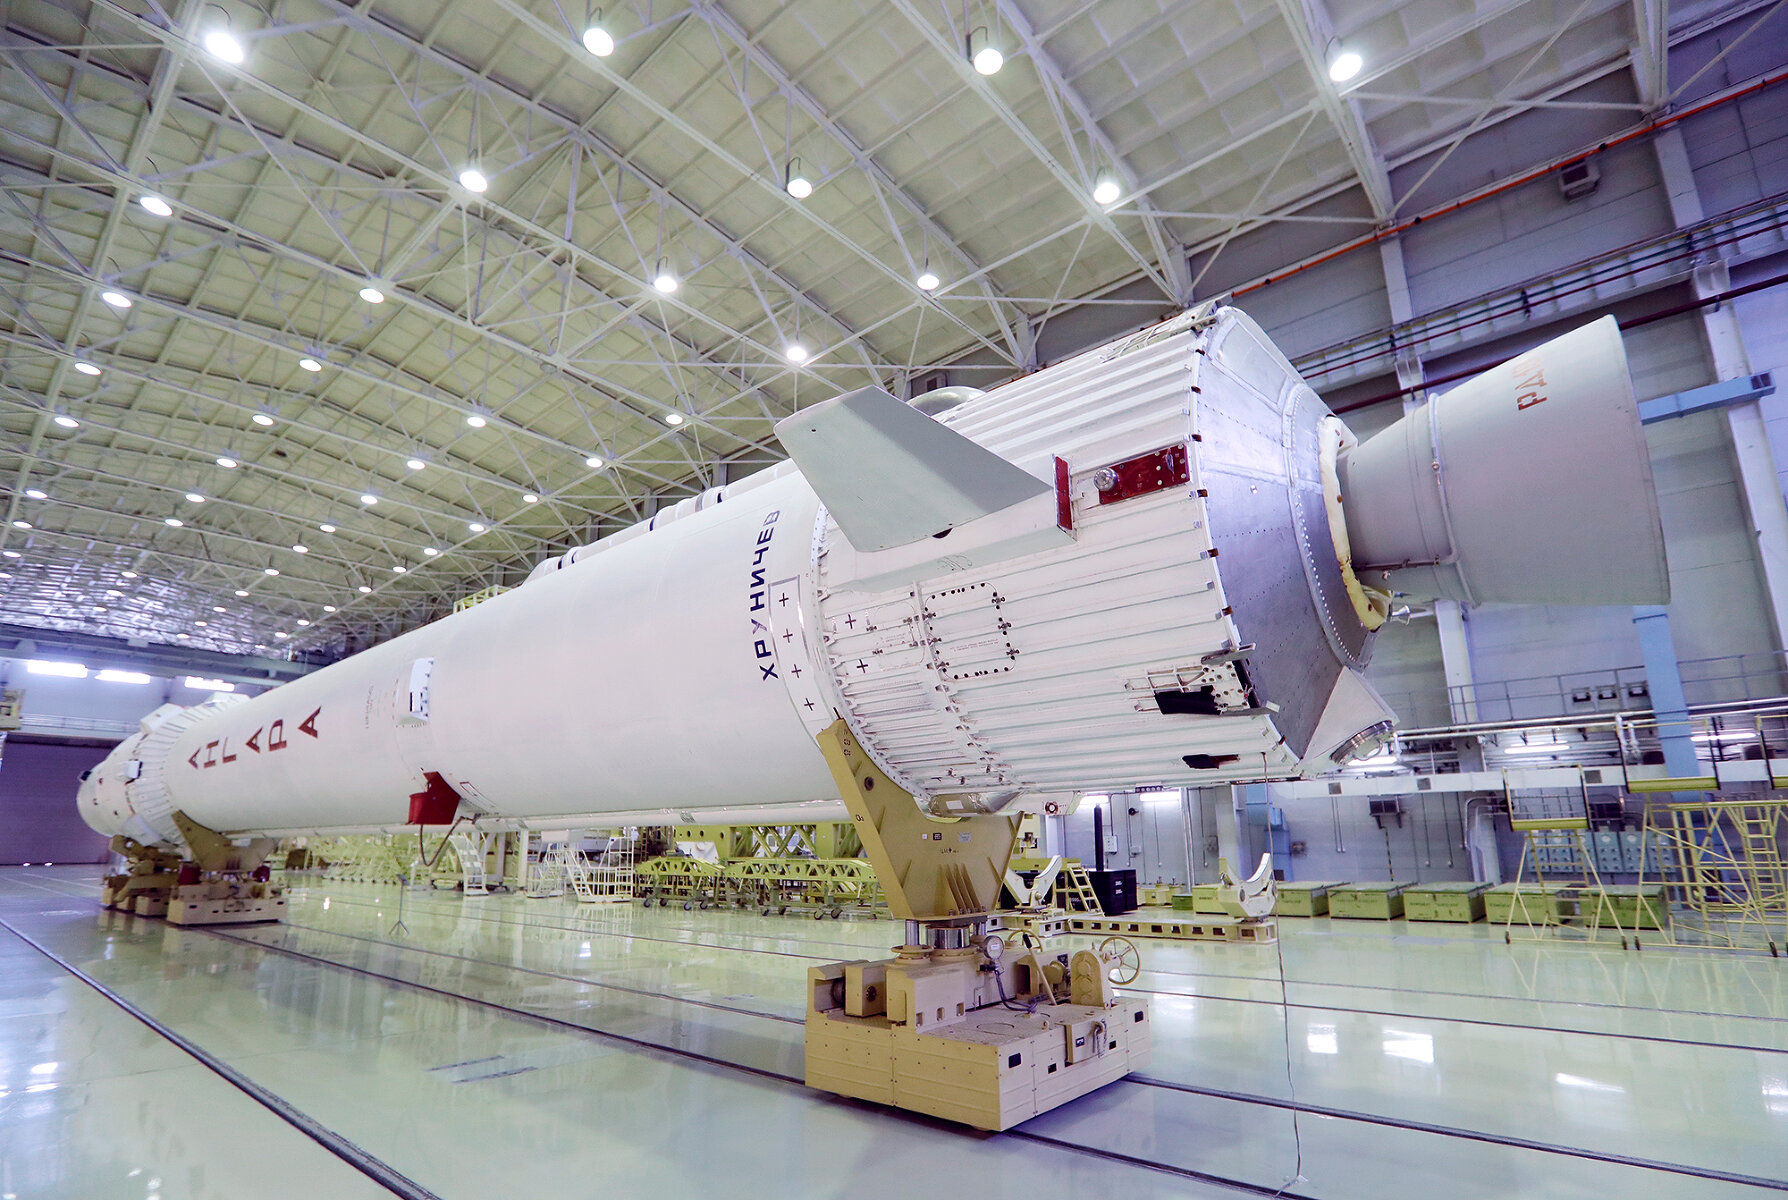 Россия. <p>Сейчас ГК &laquo;Роскосмос&raquo; разрабатывает новое семейство ракет-носителей &laquo;Ангара&raquo; &mdash; пока было произведено два успешных тестовых пуска. По носимой полезной нагрузке &laquo;Ангара&raquo; будет сравнима с Falcon 9 и &laquo;Чанчжэн-5&raquo;. <strong>На фото&nbsp;&mdash;</strong> макет &laquo;Ангары&raquo; на космодроме Плесецк.</p>